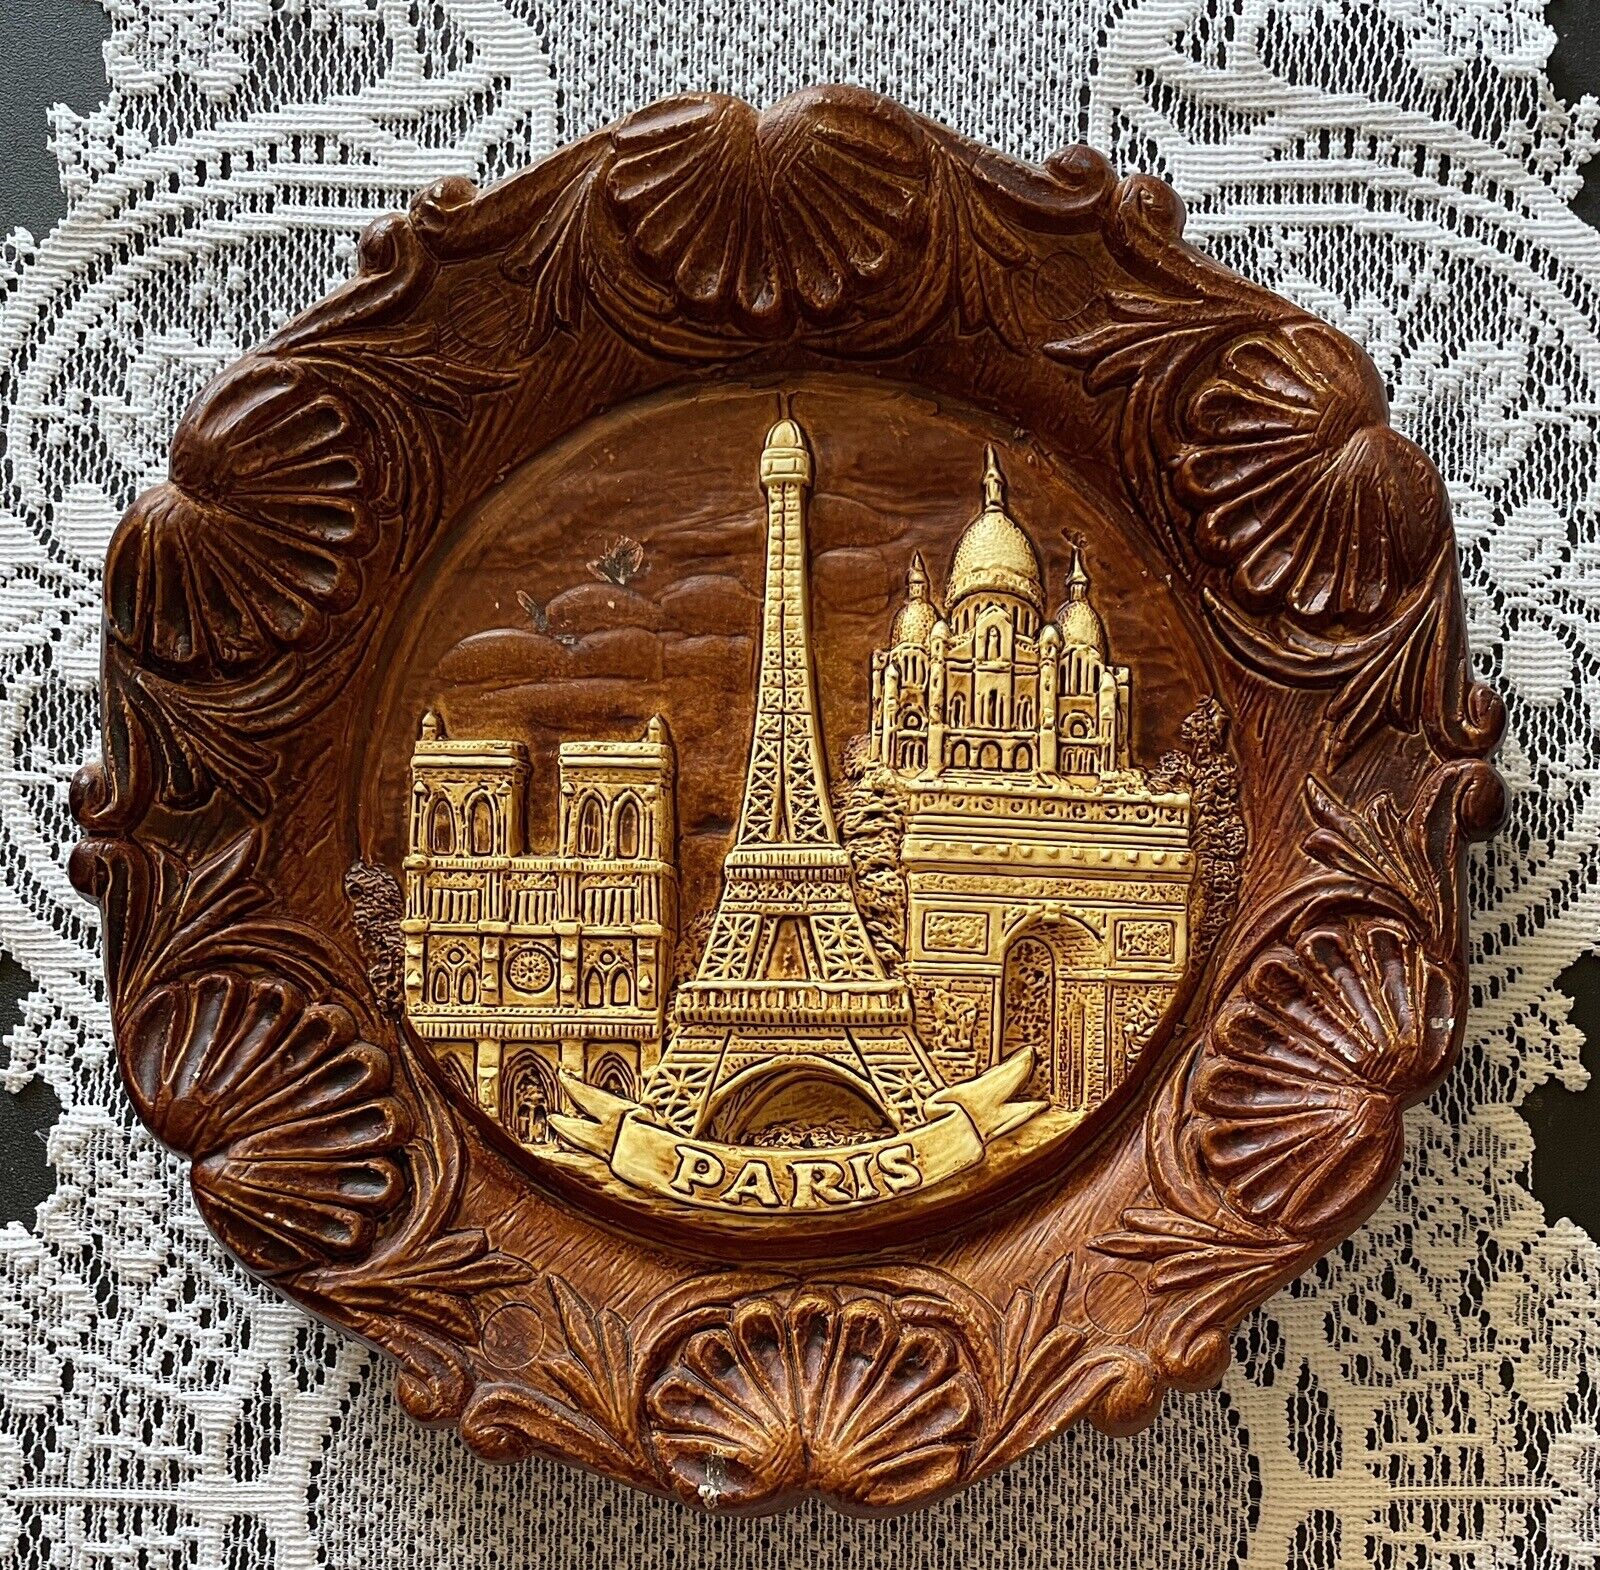 Paris France Depose Vintage Wall Plate Plaque Souvenir Eiffel Tower 3D 9.25”